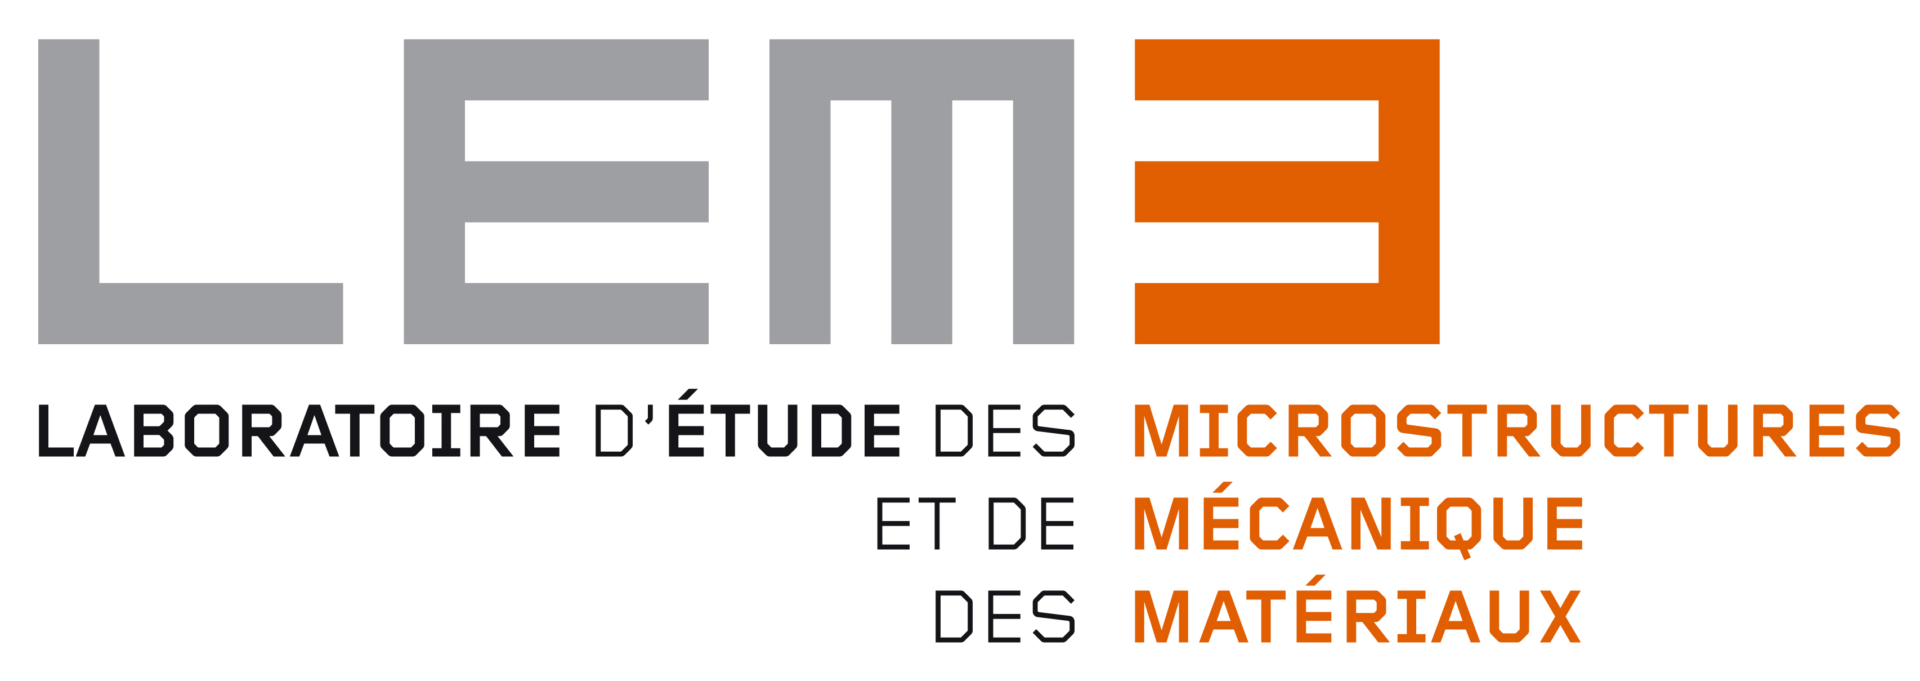 Logo LEM3